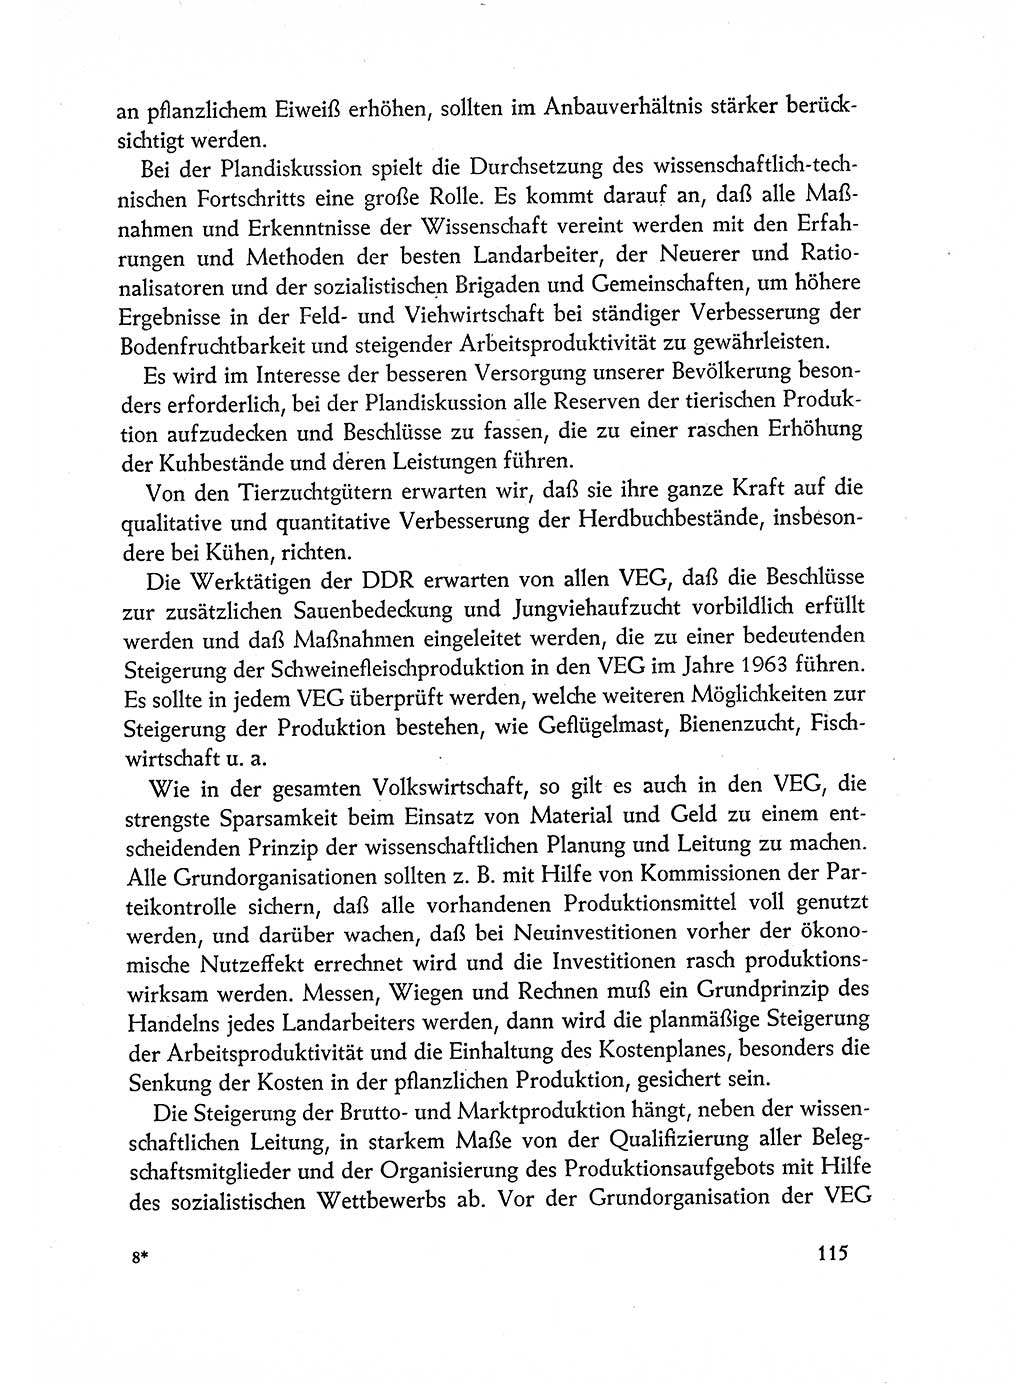 Dokumente der Sozialistischen Einheitspartei Deutschlands (SED) [Deutsche Demokratische Republik (DDR)] 1962-1963, Seite 115 (Dok. SED DDR 1962-1963, S. 115)